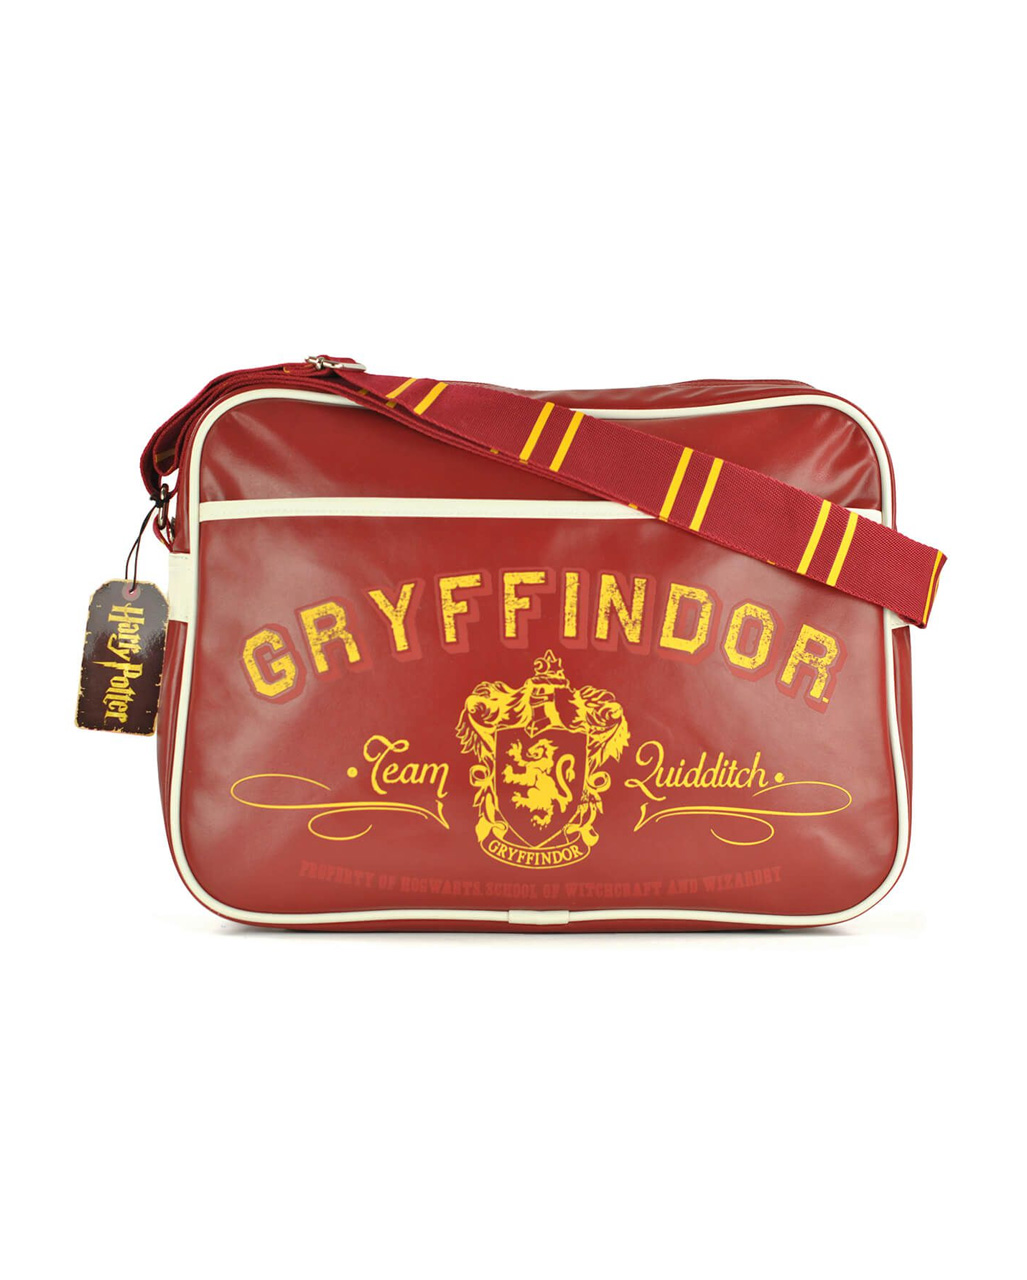 Harry Potter Shoulder Bag for HP fans | horror-shop.com